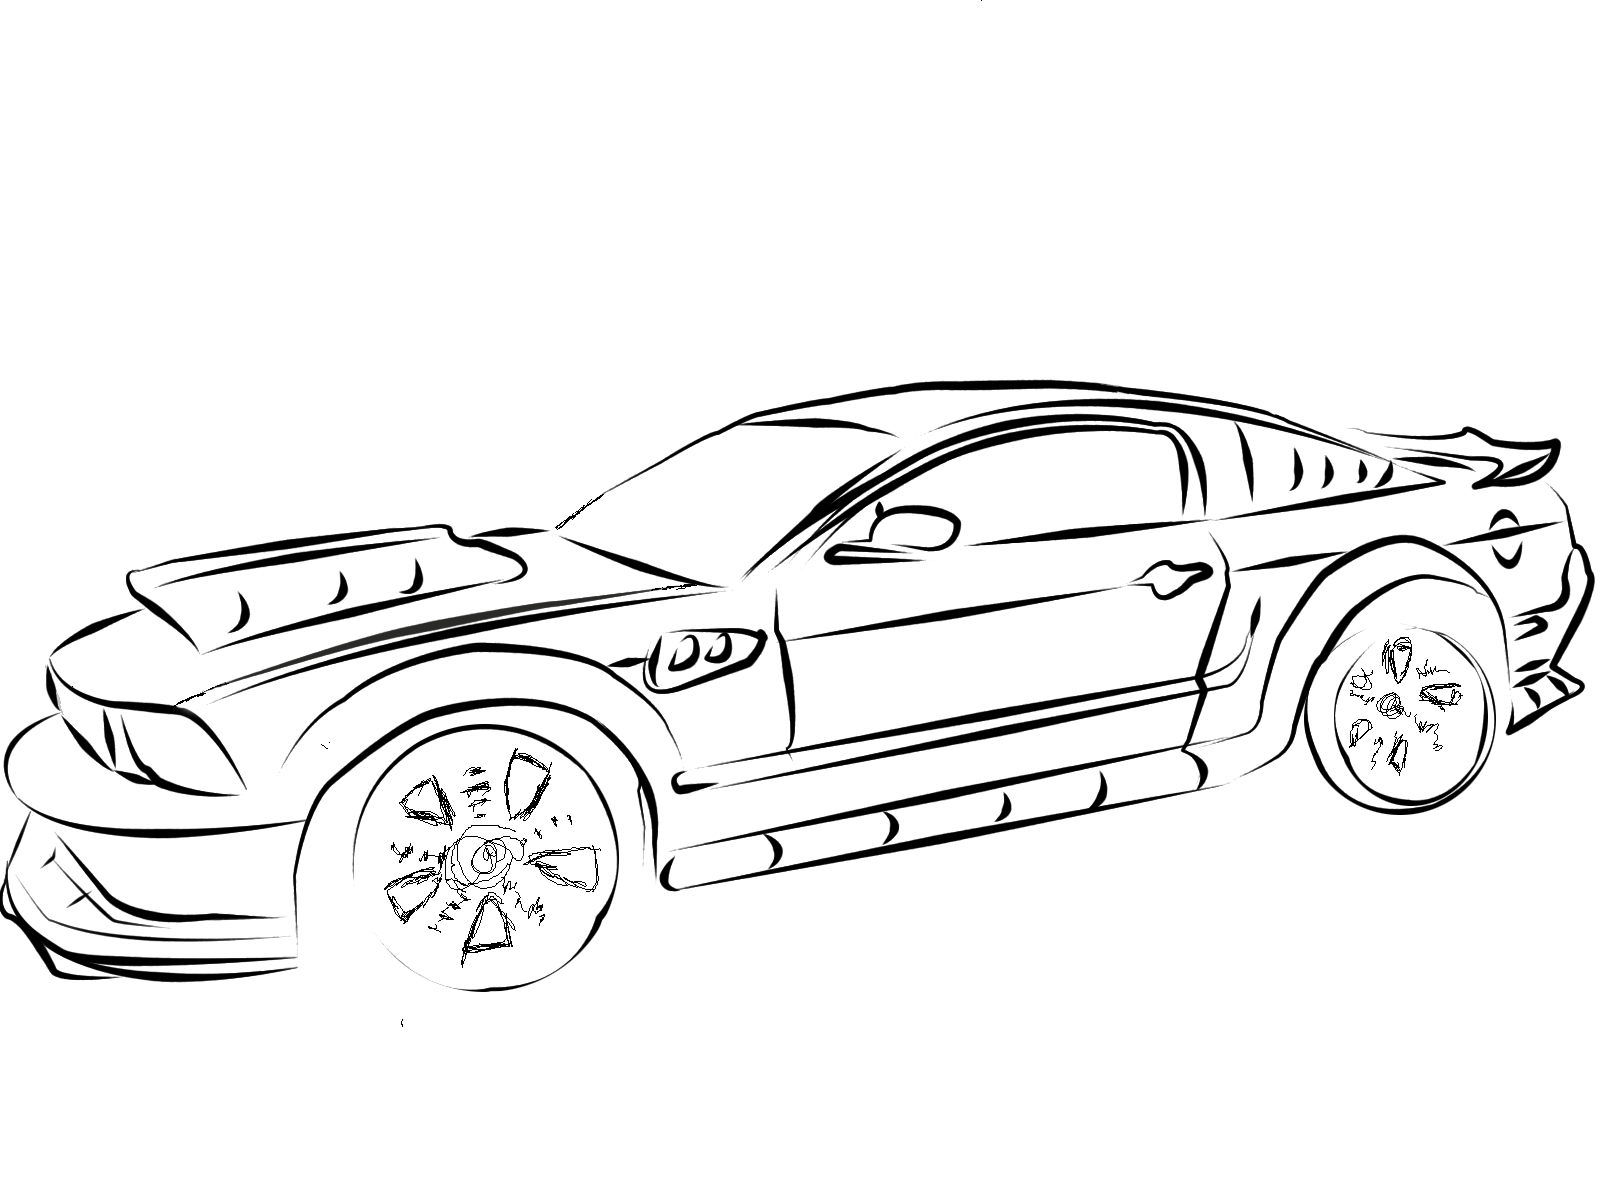 Раскраска Ford Mustang | Раскраски для детей печать онлайн